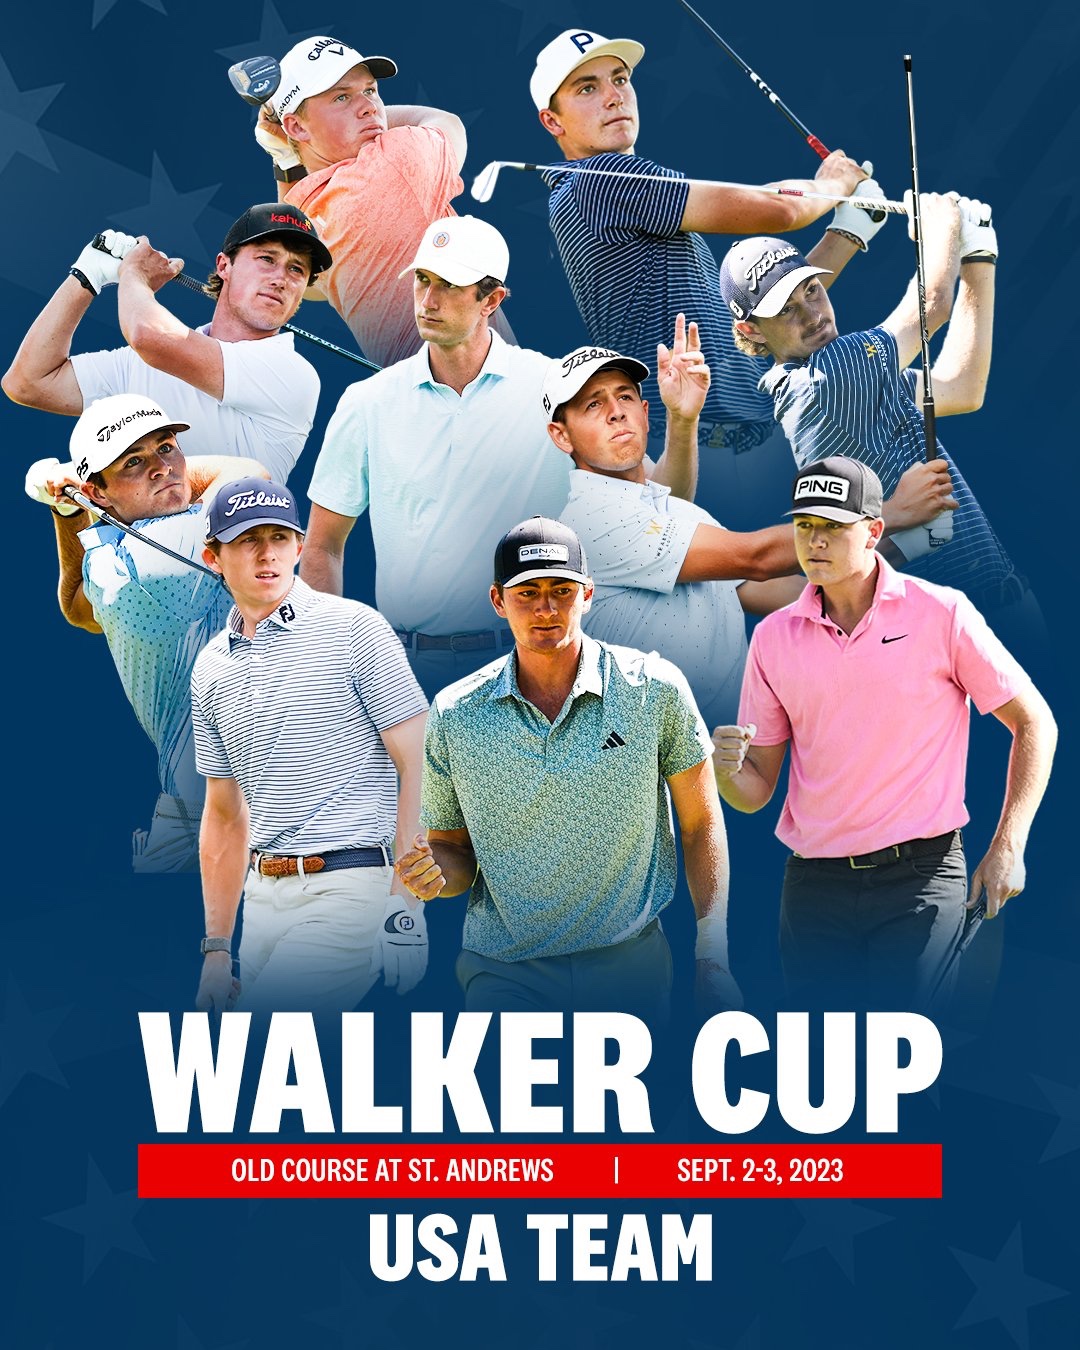 WAGR – Walker Cup